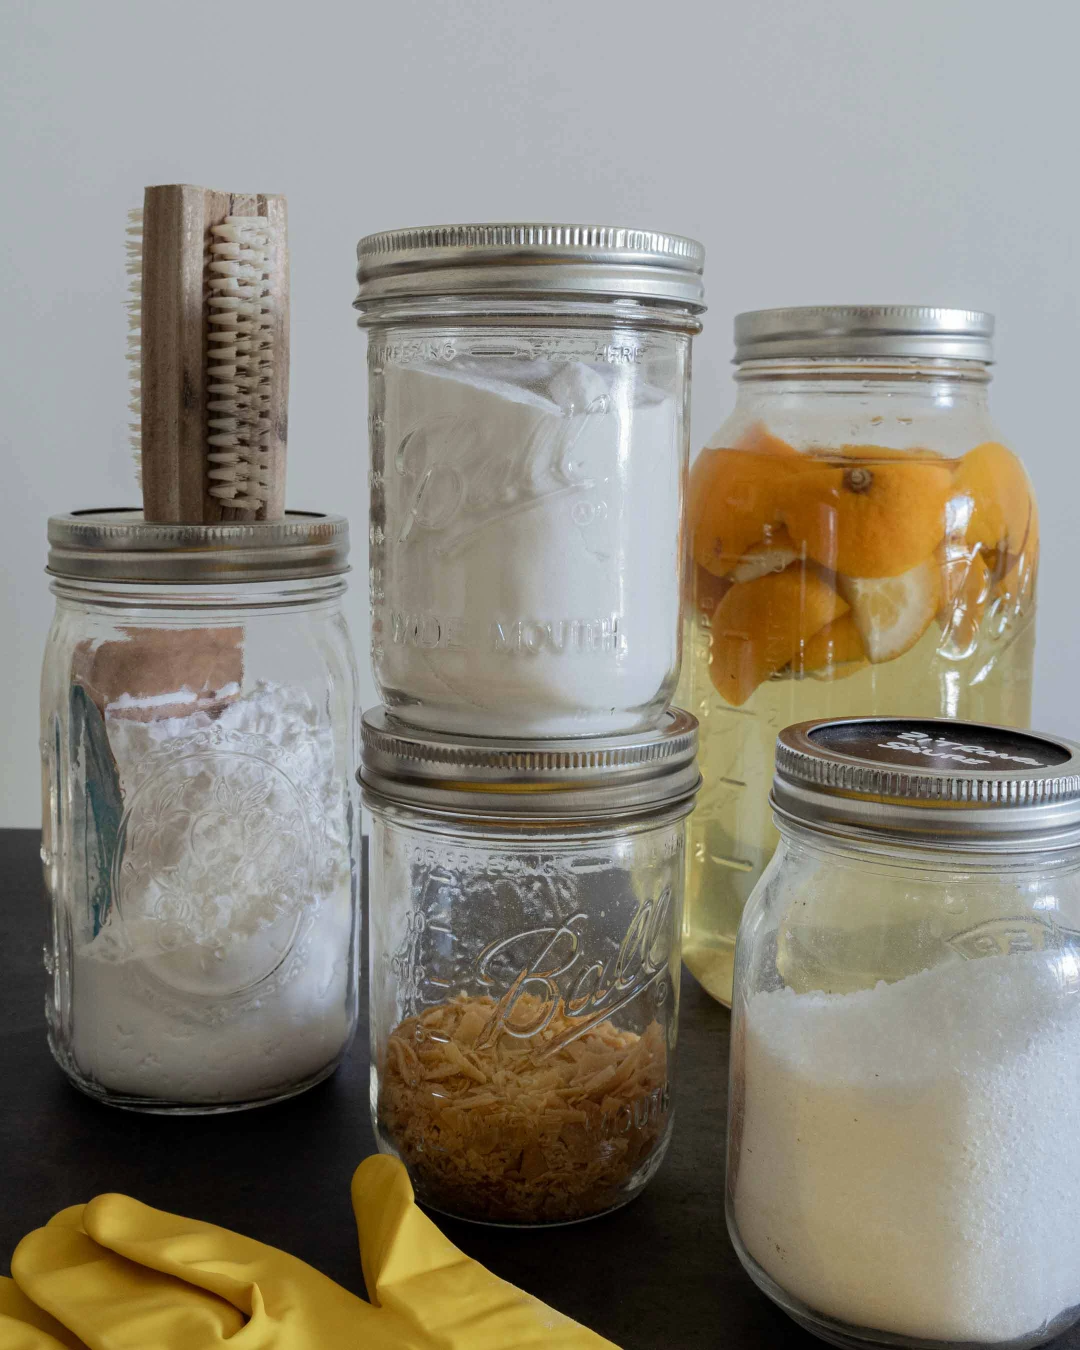 Fünf Hausmittel bestehend aus Natron, Soda, Kernseife, Essig und Zitronensäure in Gläsern